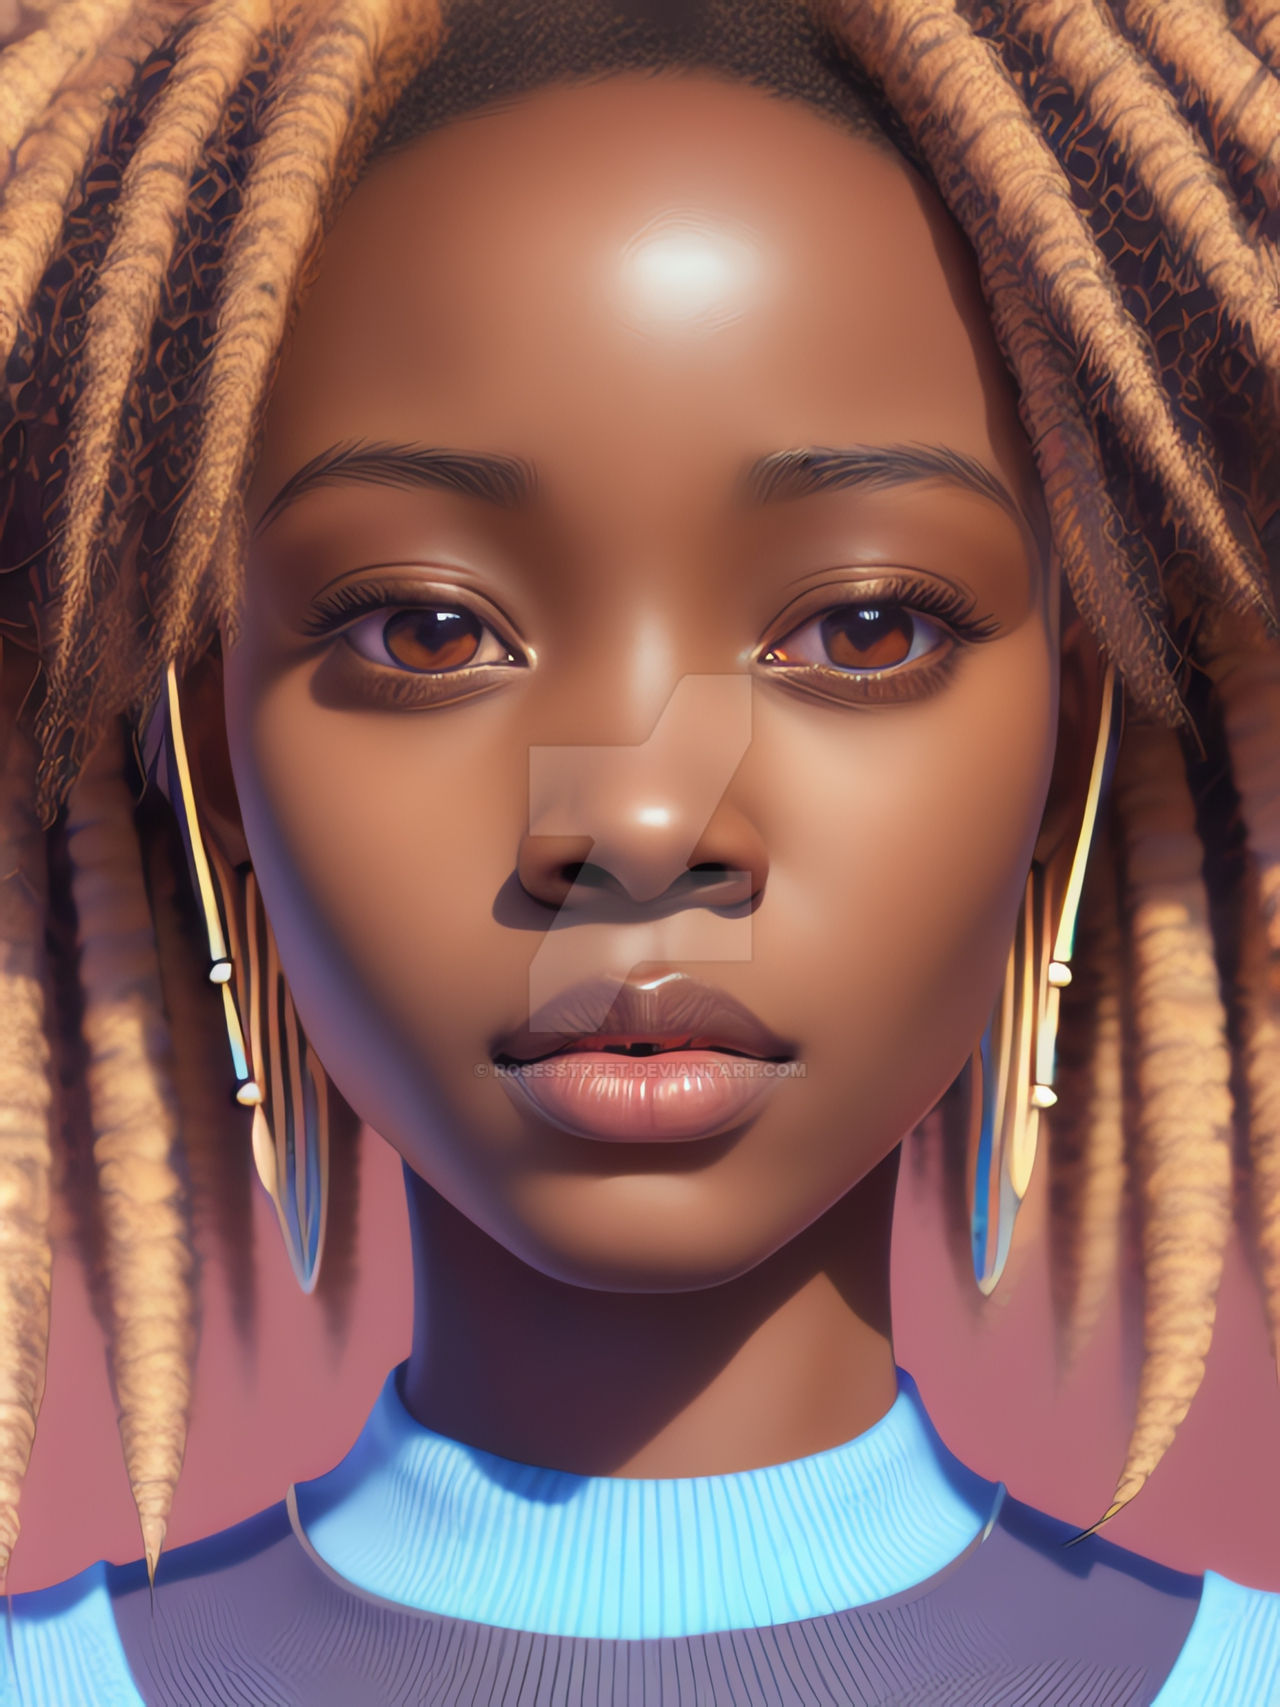 African Girl 40 by RosesStreet on DeviantArt